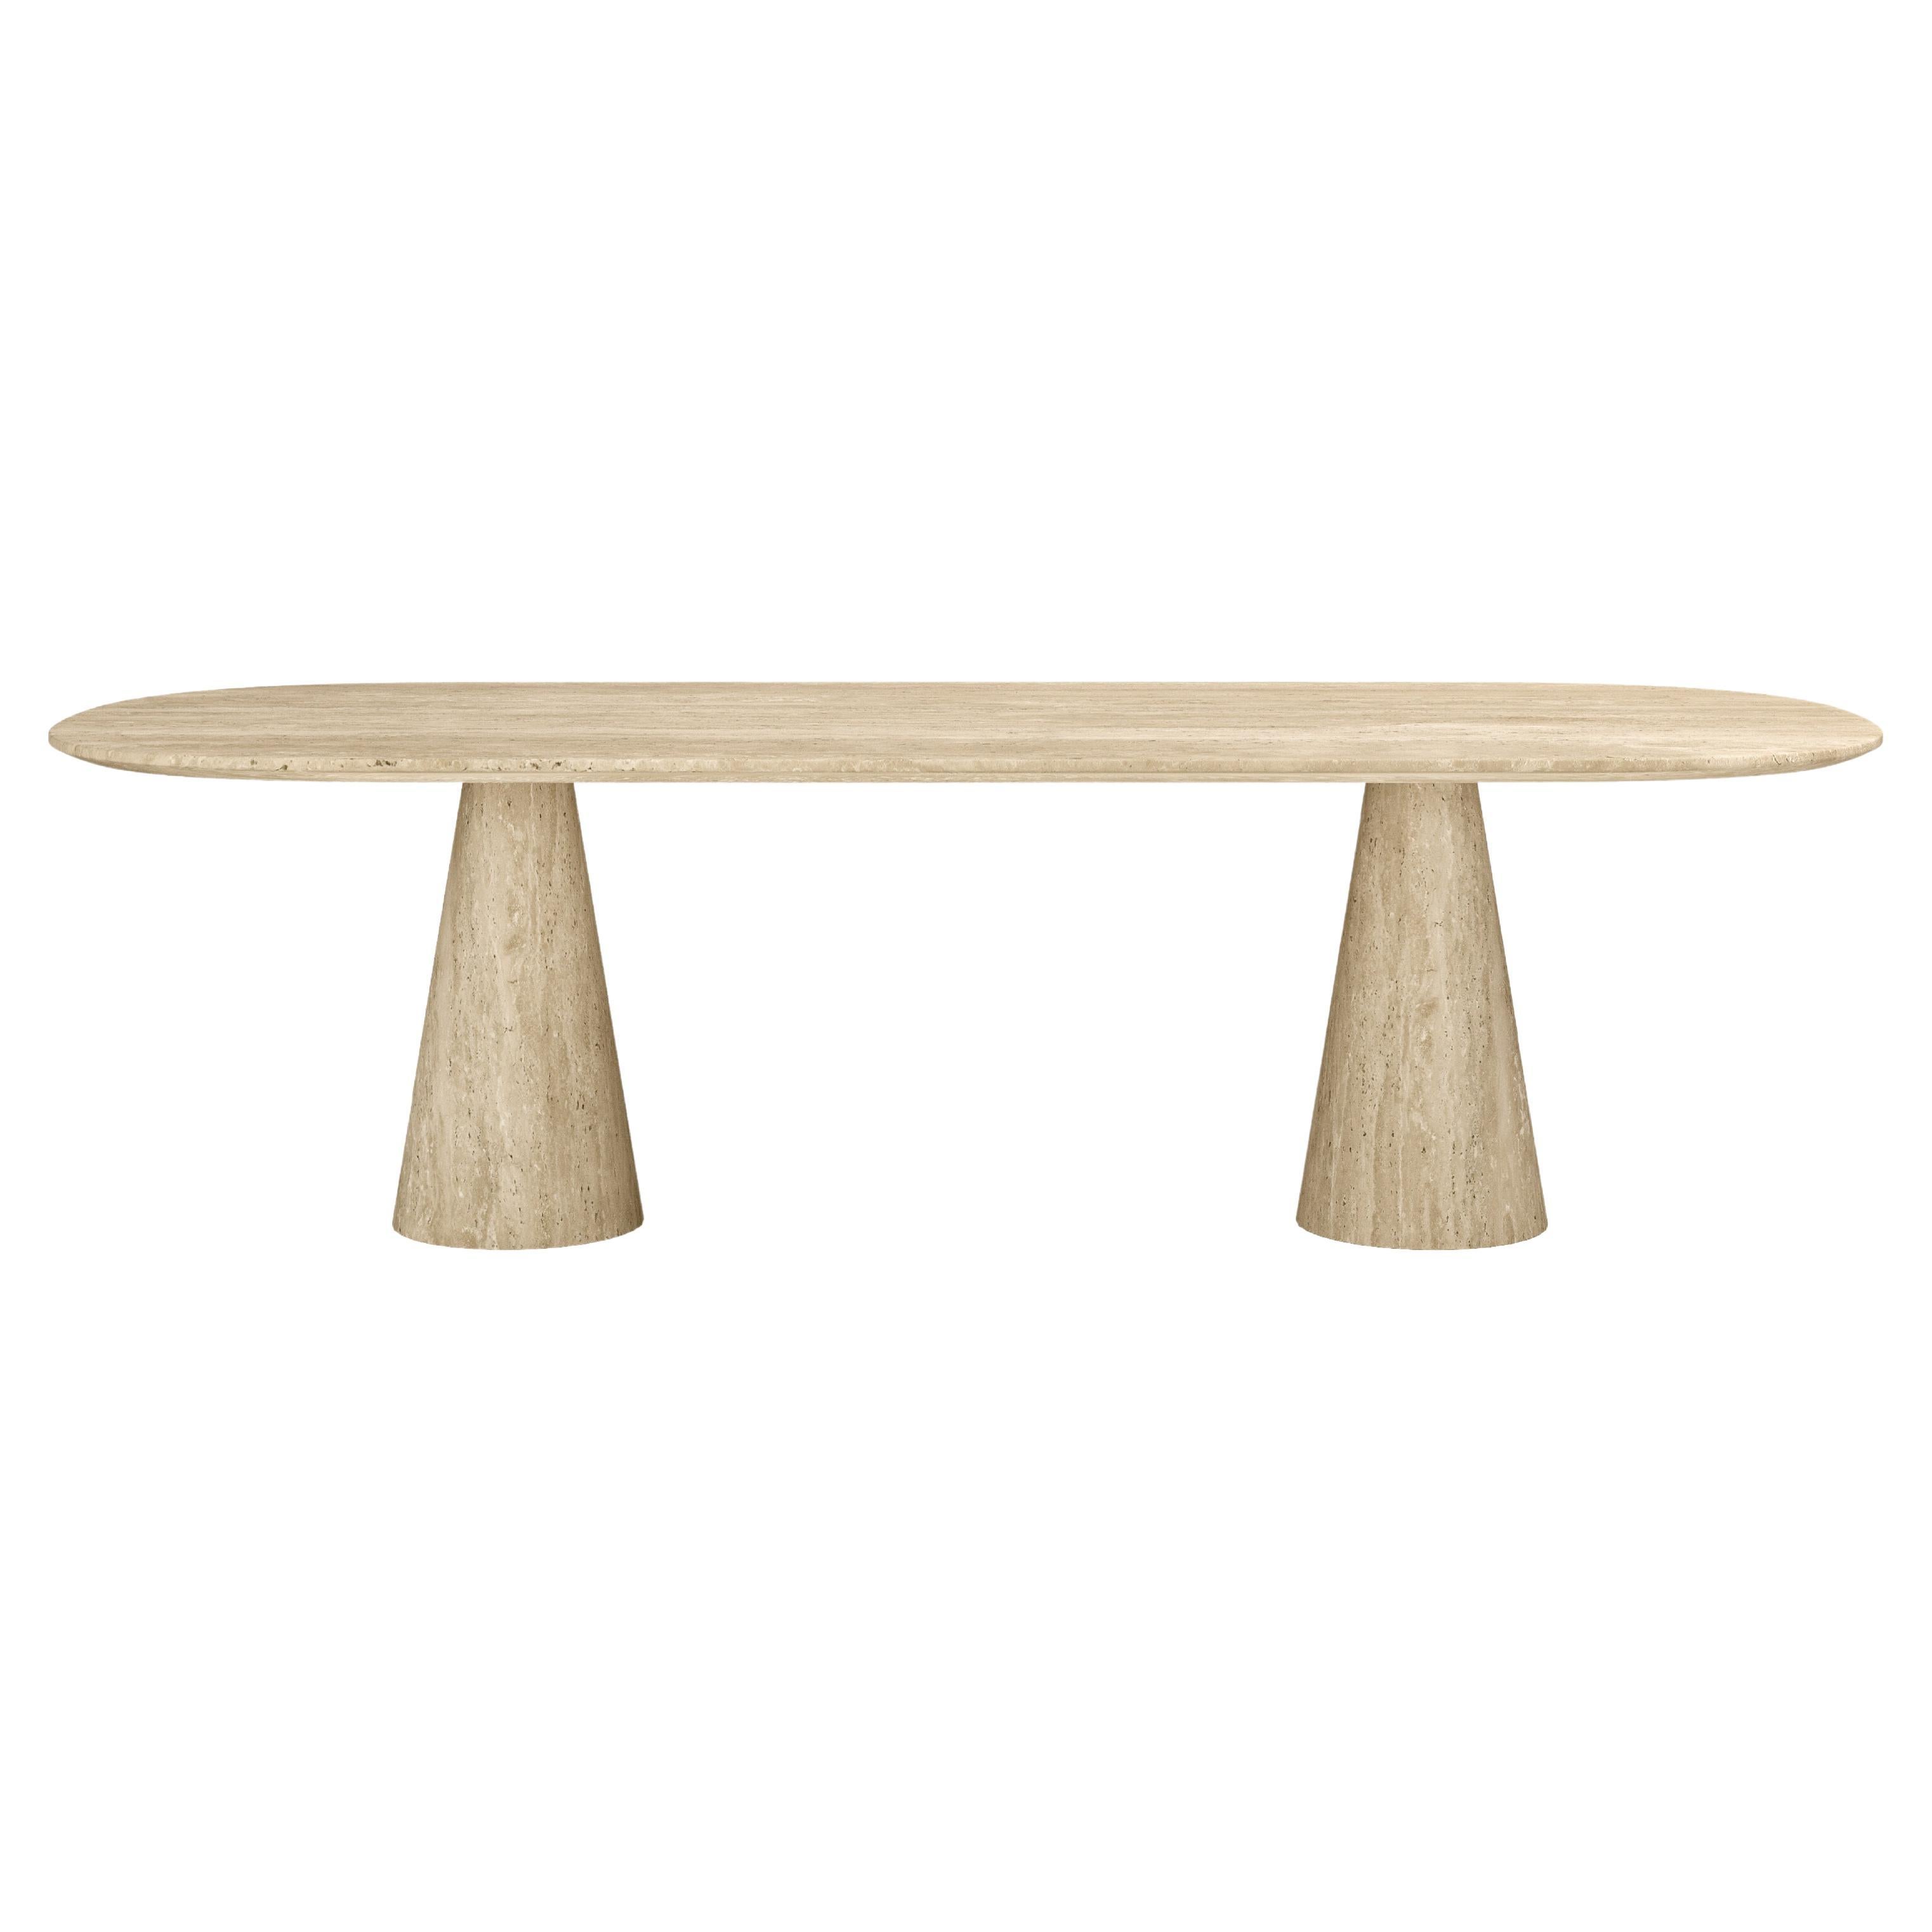 FORM(LA) Cono Oval Dining Table 108”L x 48”W x 30”H Travertino Crema VC For Sale